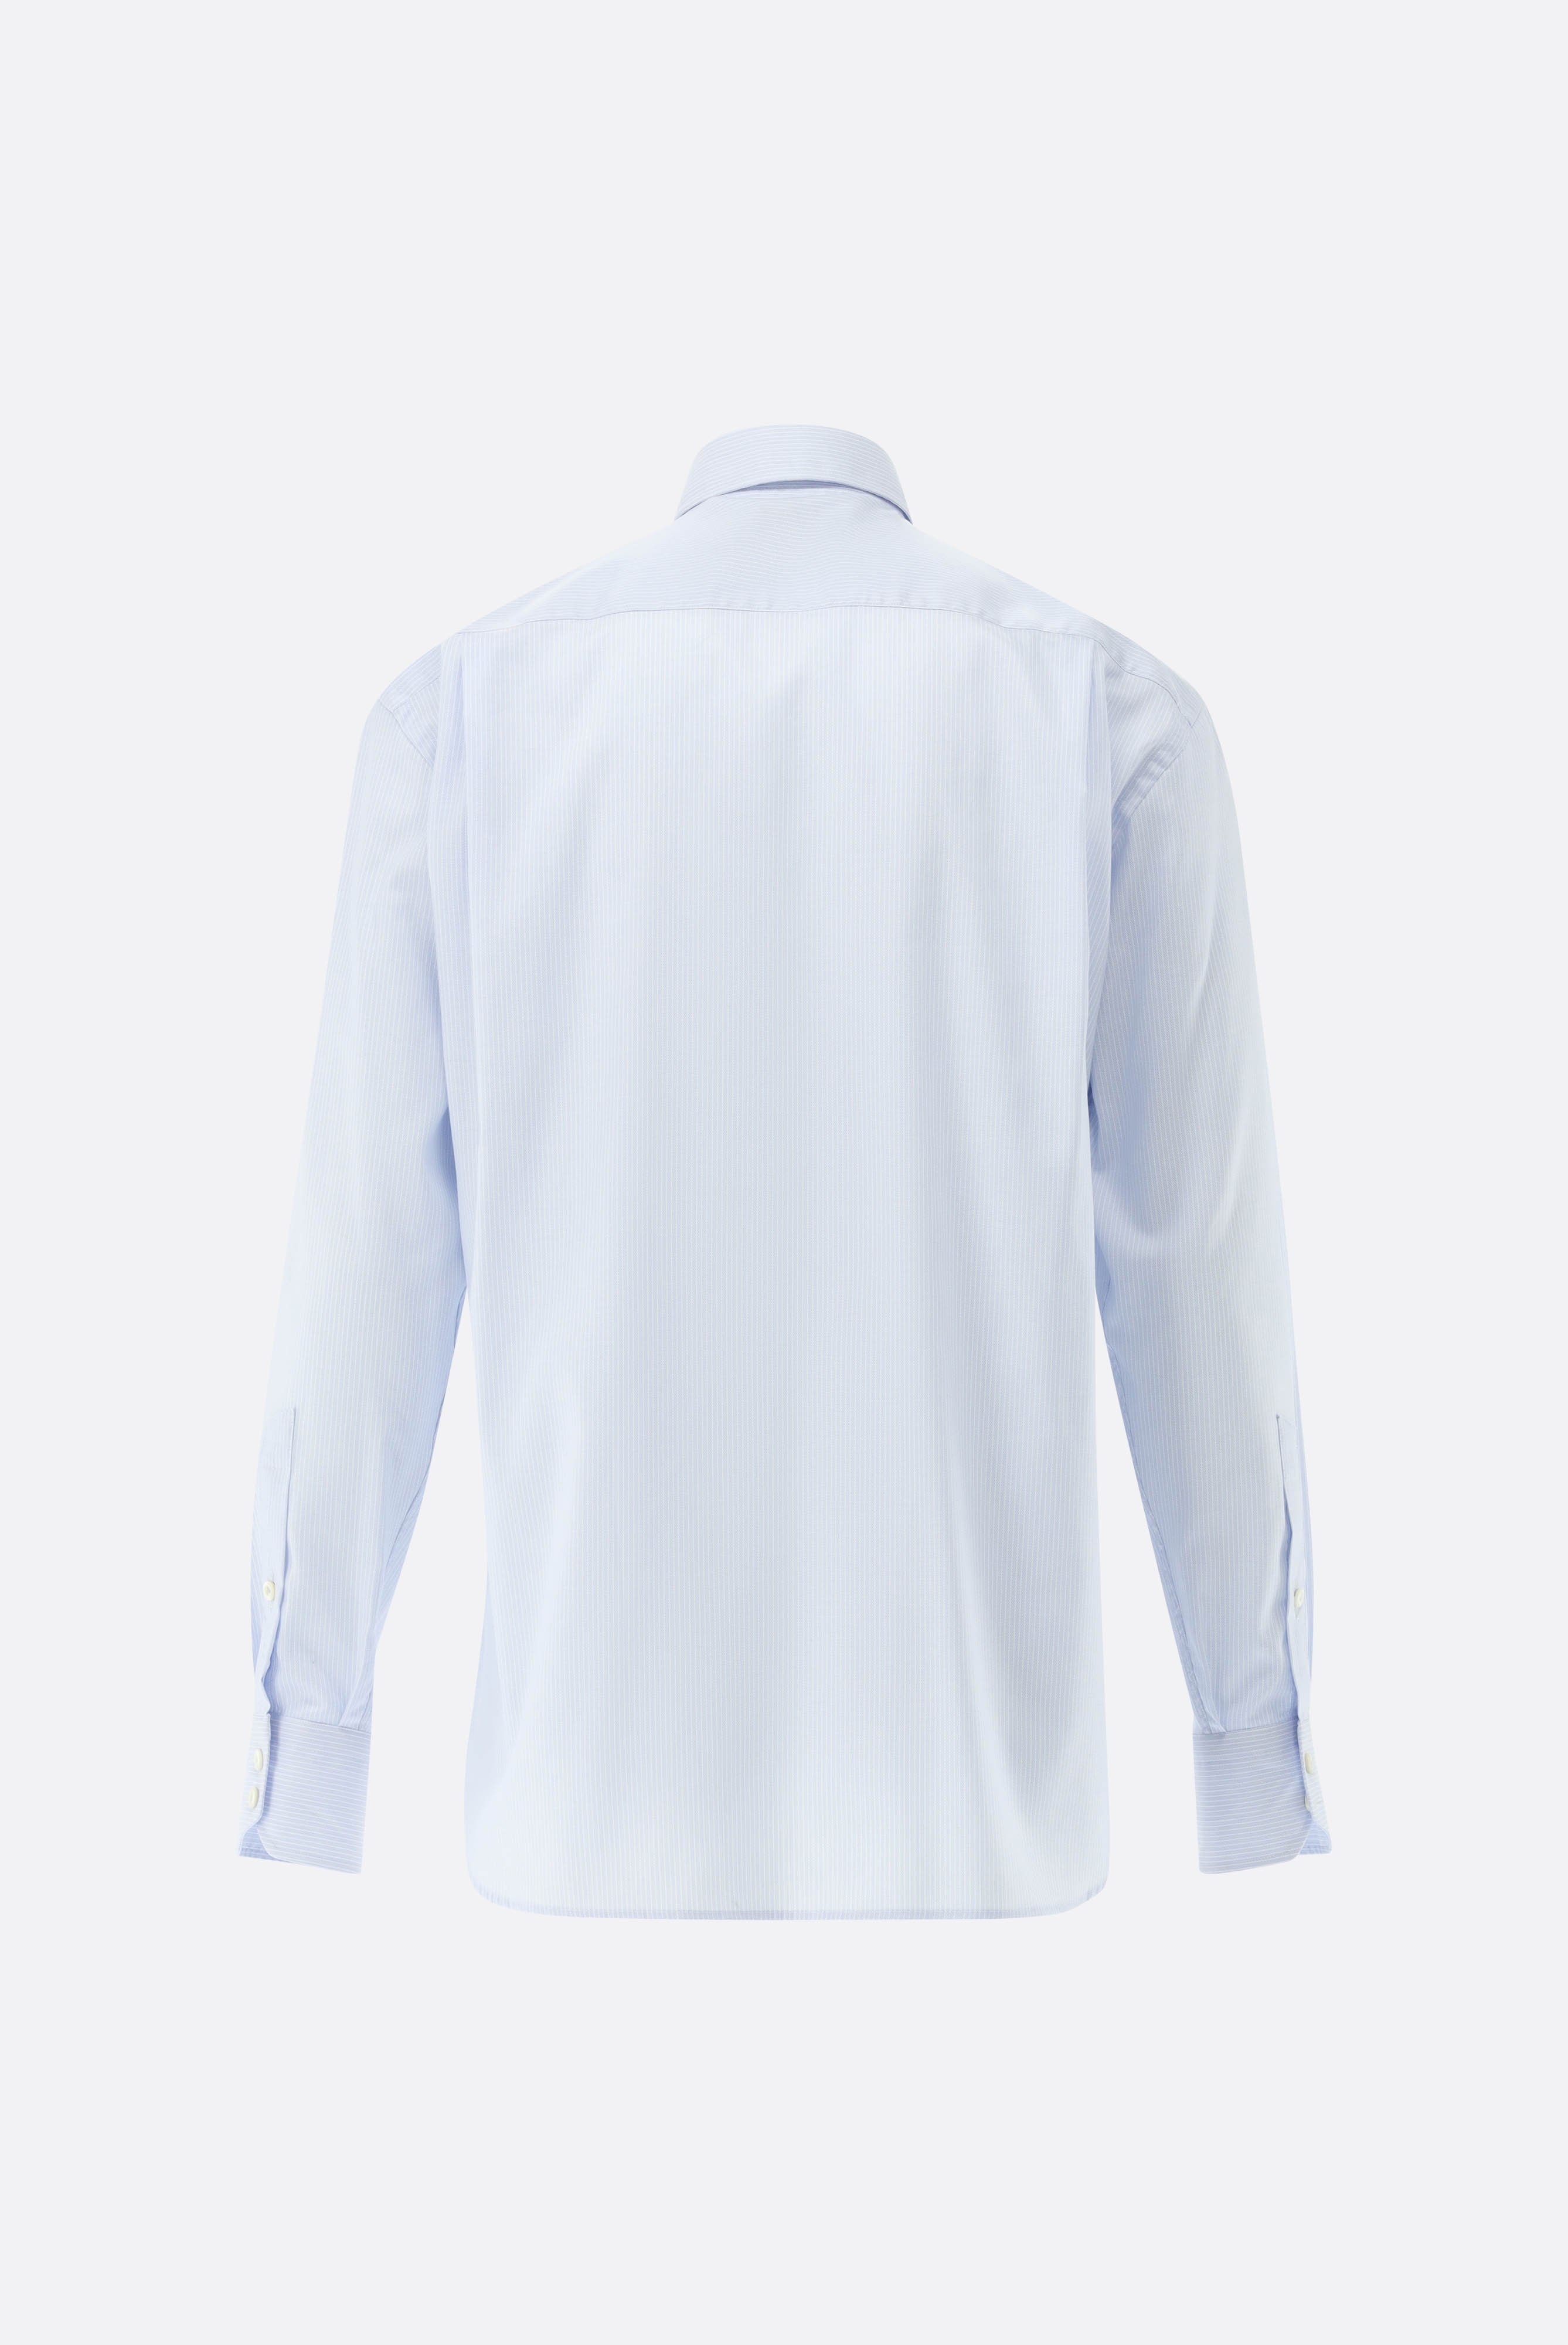 Bügelleichte Hemden+Bügelfreies Hemd mit Streifen Comfort Fit+20.2026.BQ.161109.710.39